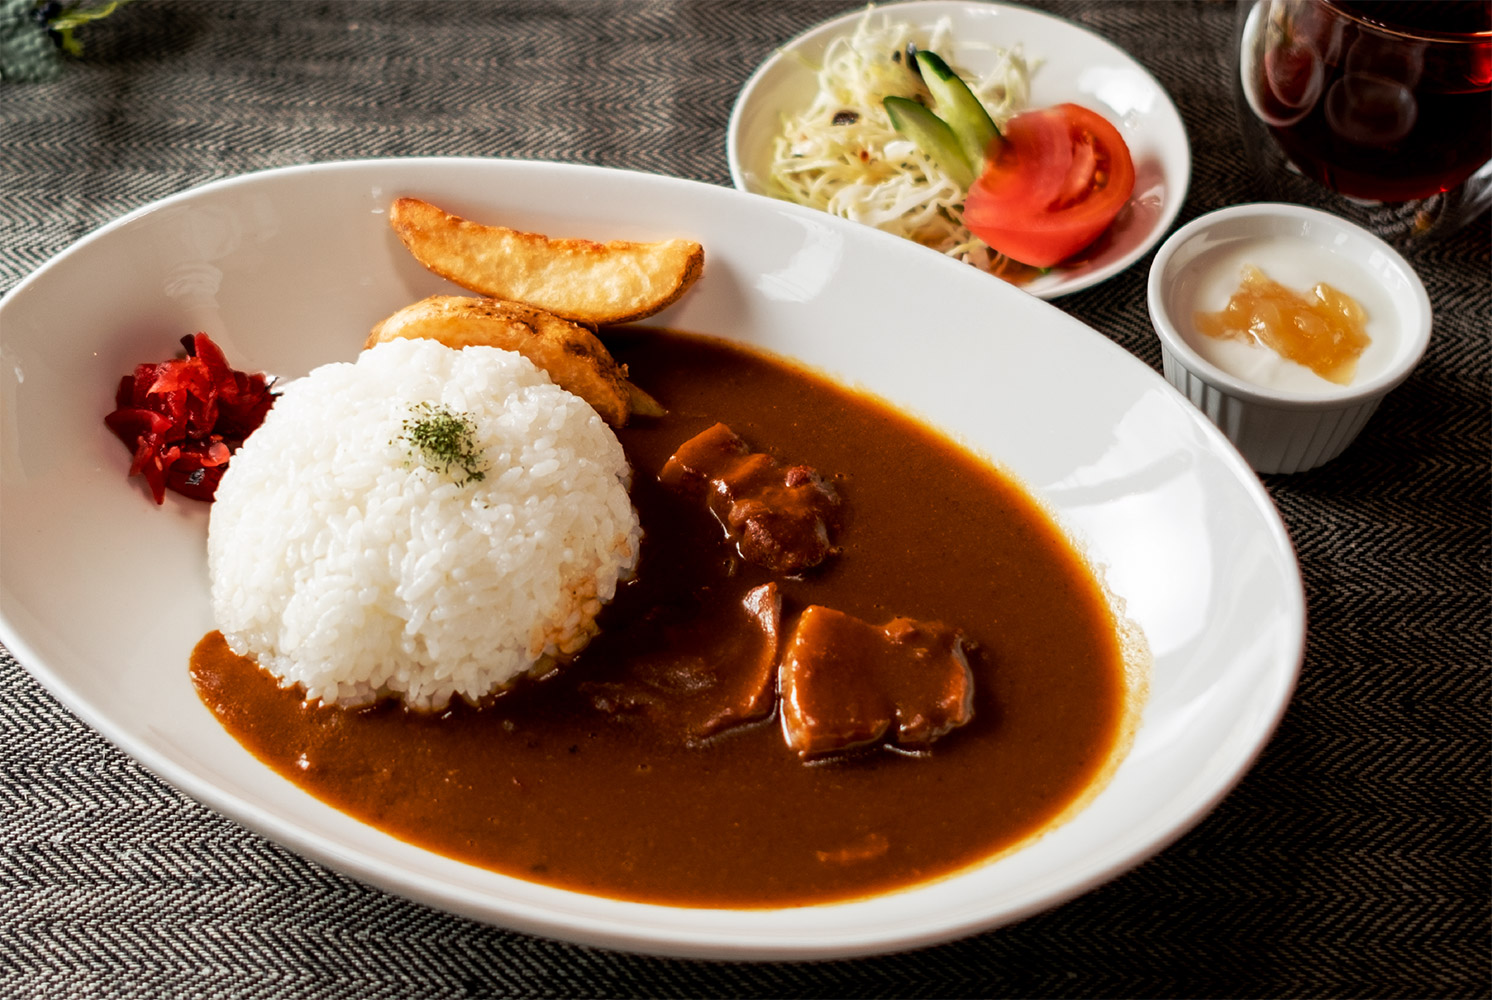 美瑛豚 ポークカレー Biei Pork
Curry and Rice